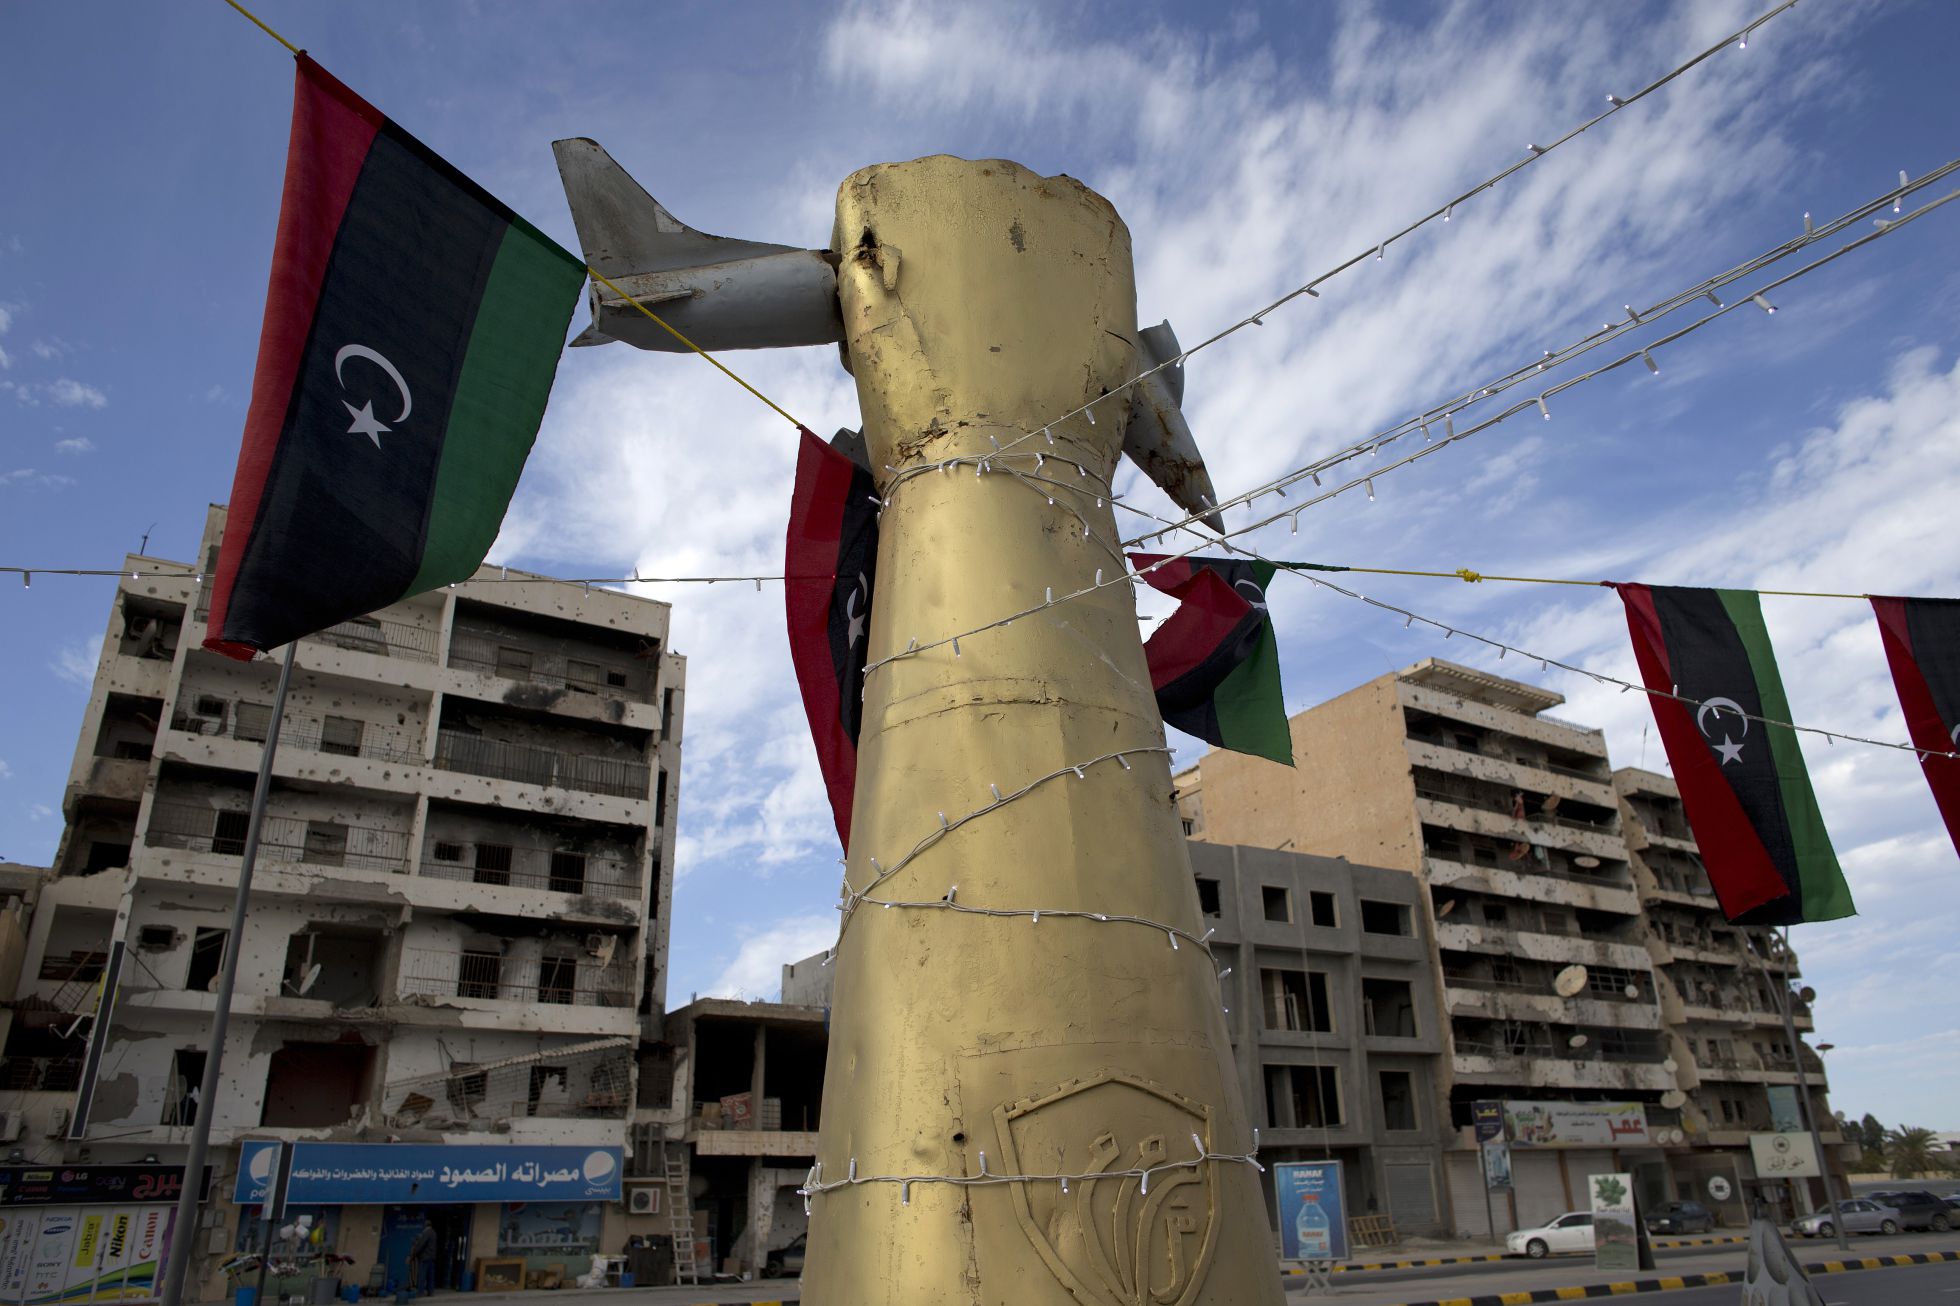 guerra - Libia - Entre la guerra civil y las manos del EI - Página 2 1457166141_627838_1457450077_noticia_normal_recorte1